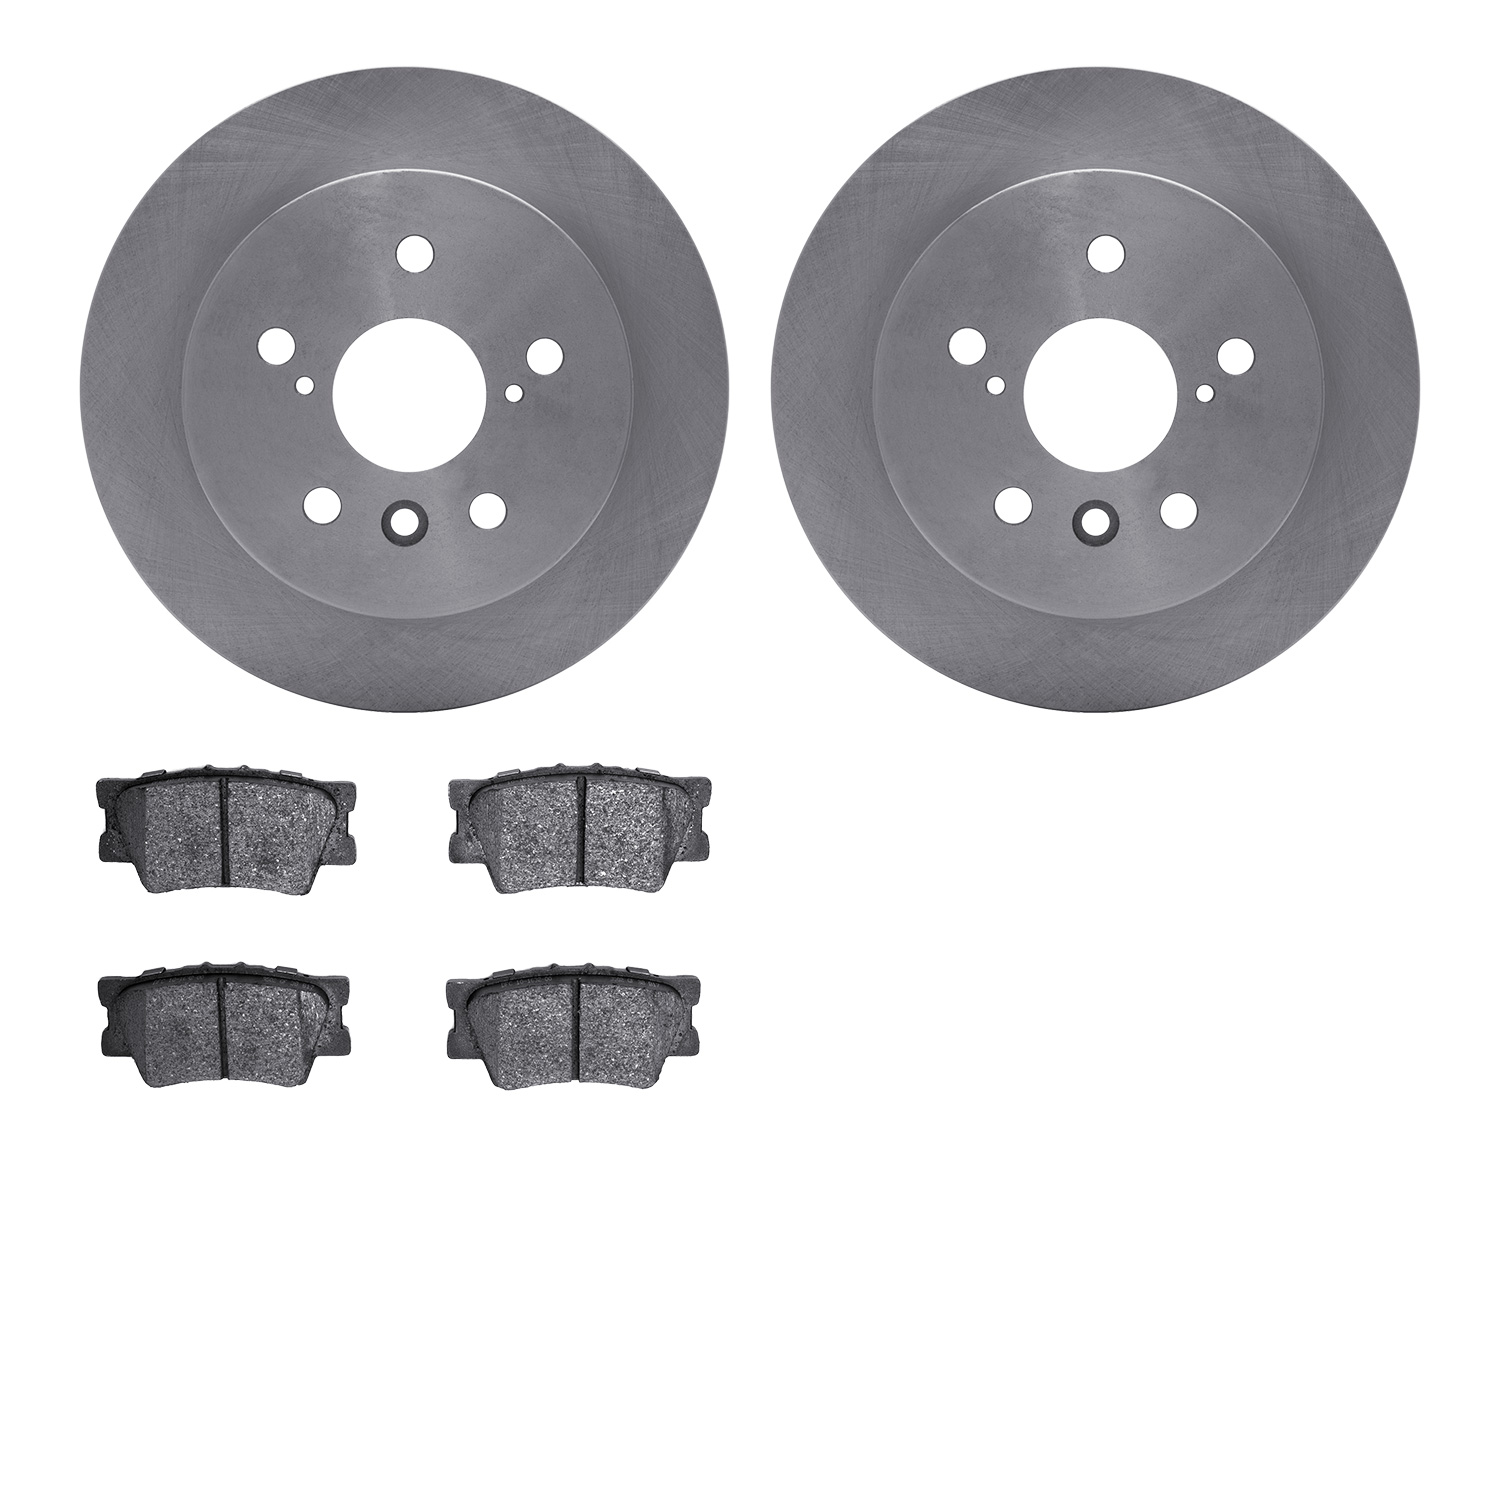 6502-76683 Brake Rotors w/5000 Advanced Brake Pads Kit, Fits Select Lexus/Toyota/Scion, Position: Rear